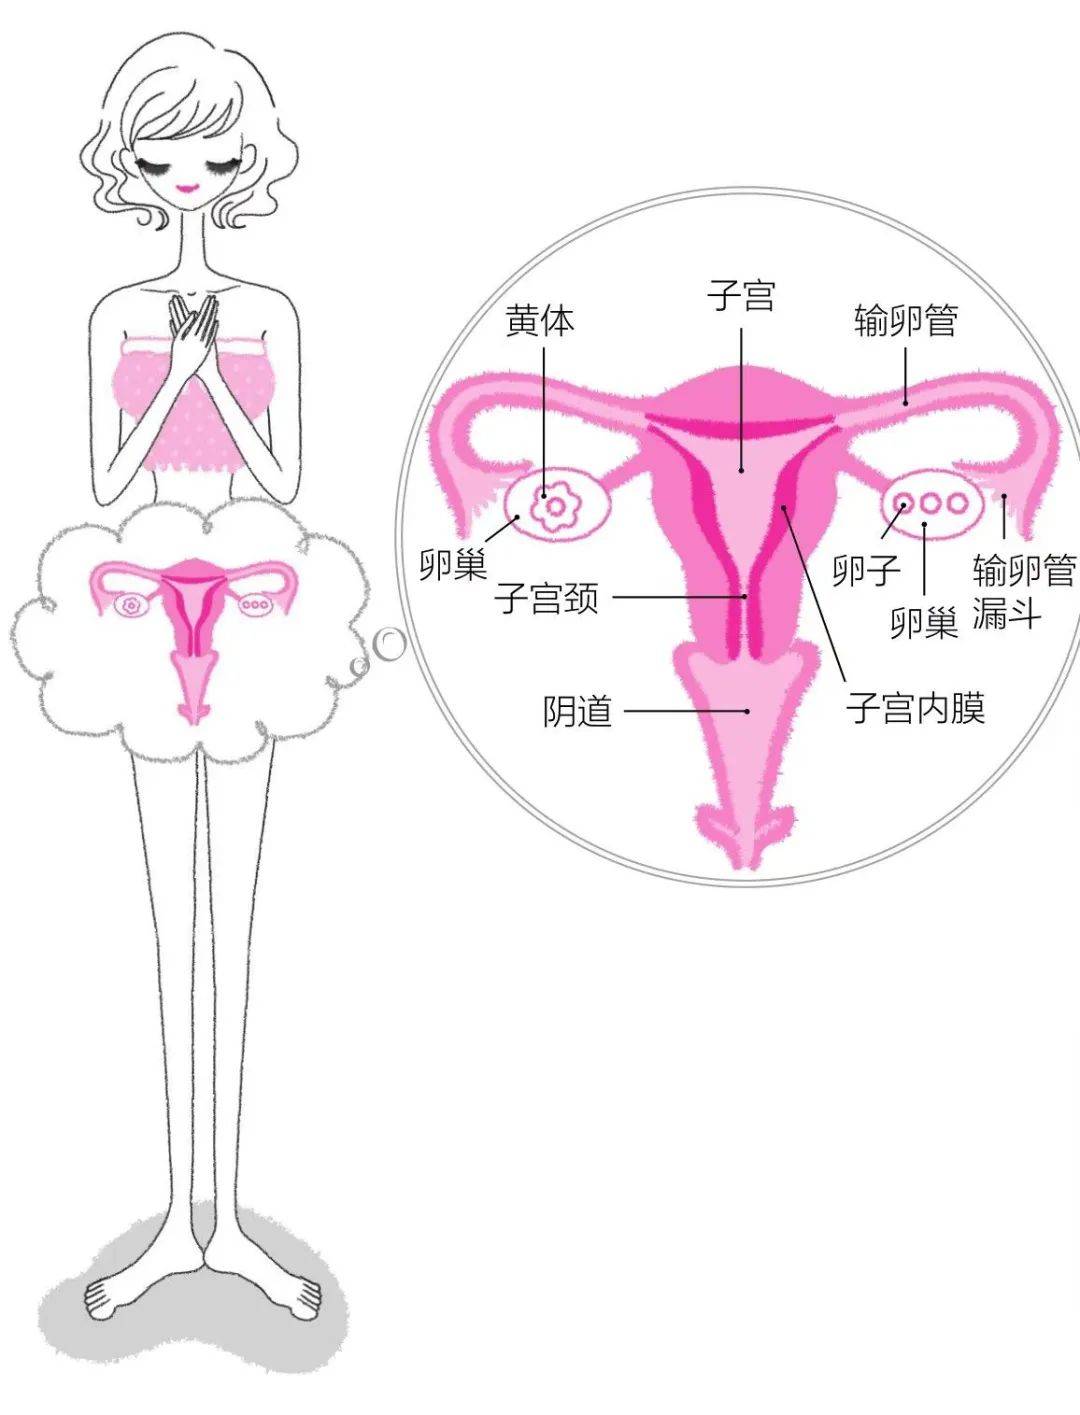 子宫在腹部的位置图片